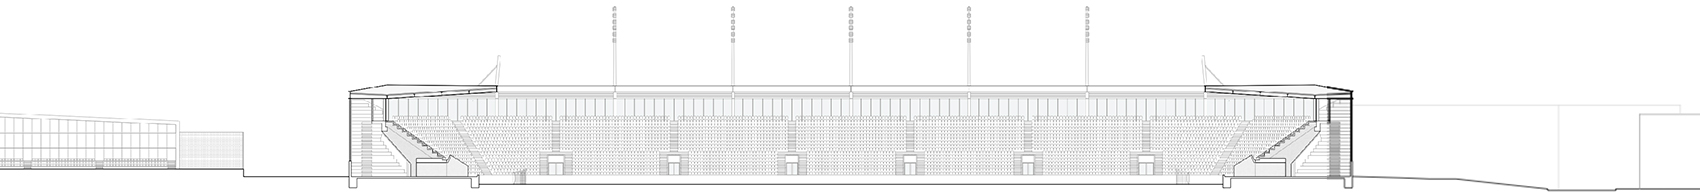 洛桑市新足球场馆，瑞士/散发宁静感的市郊体育设施-99